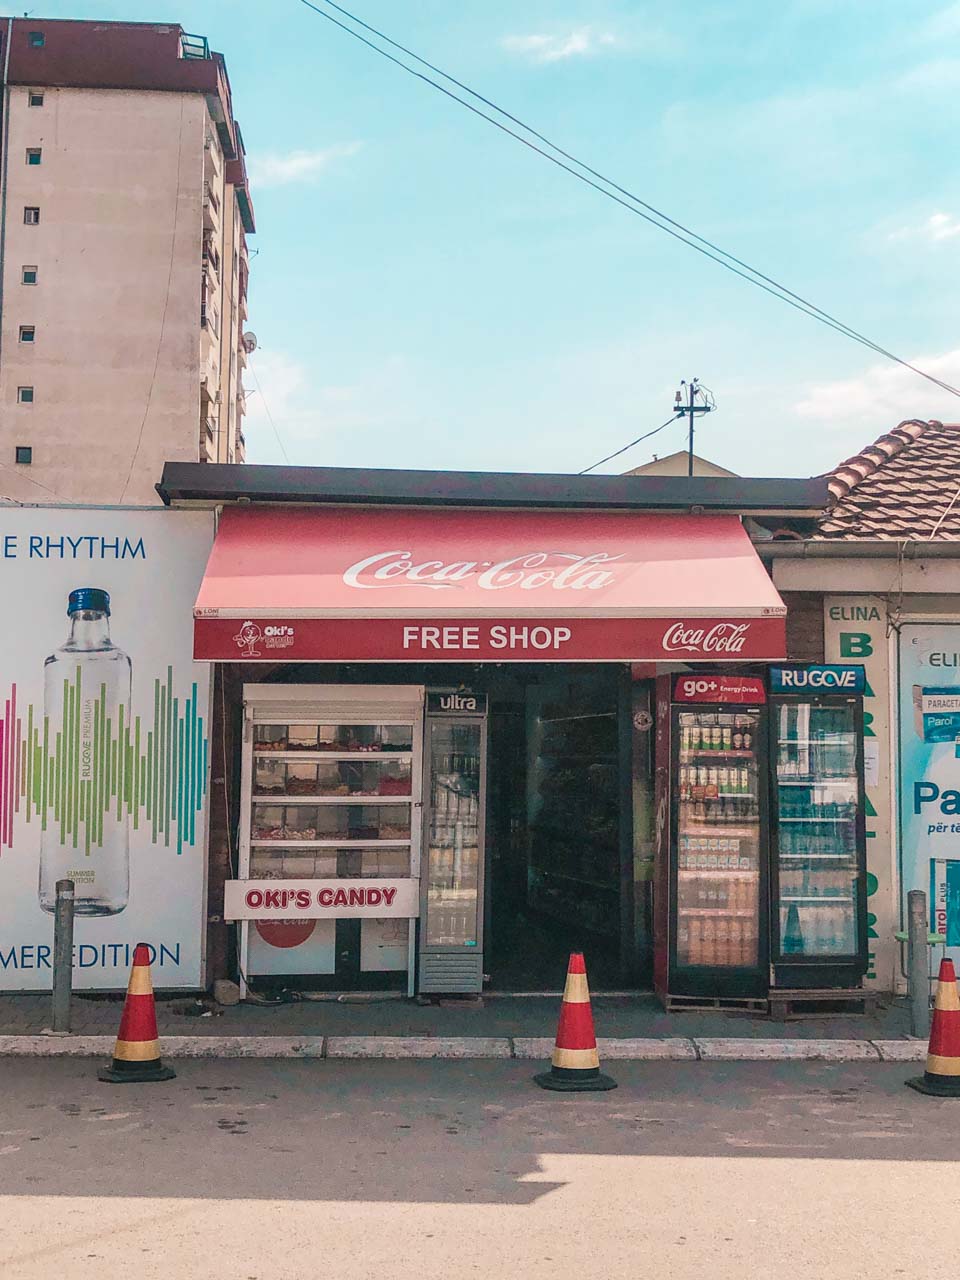 A corner shop in Pristina, Kosovo